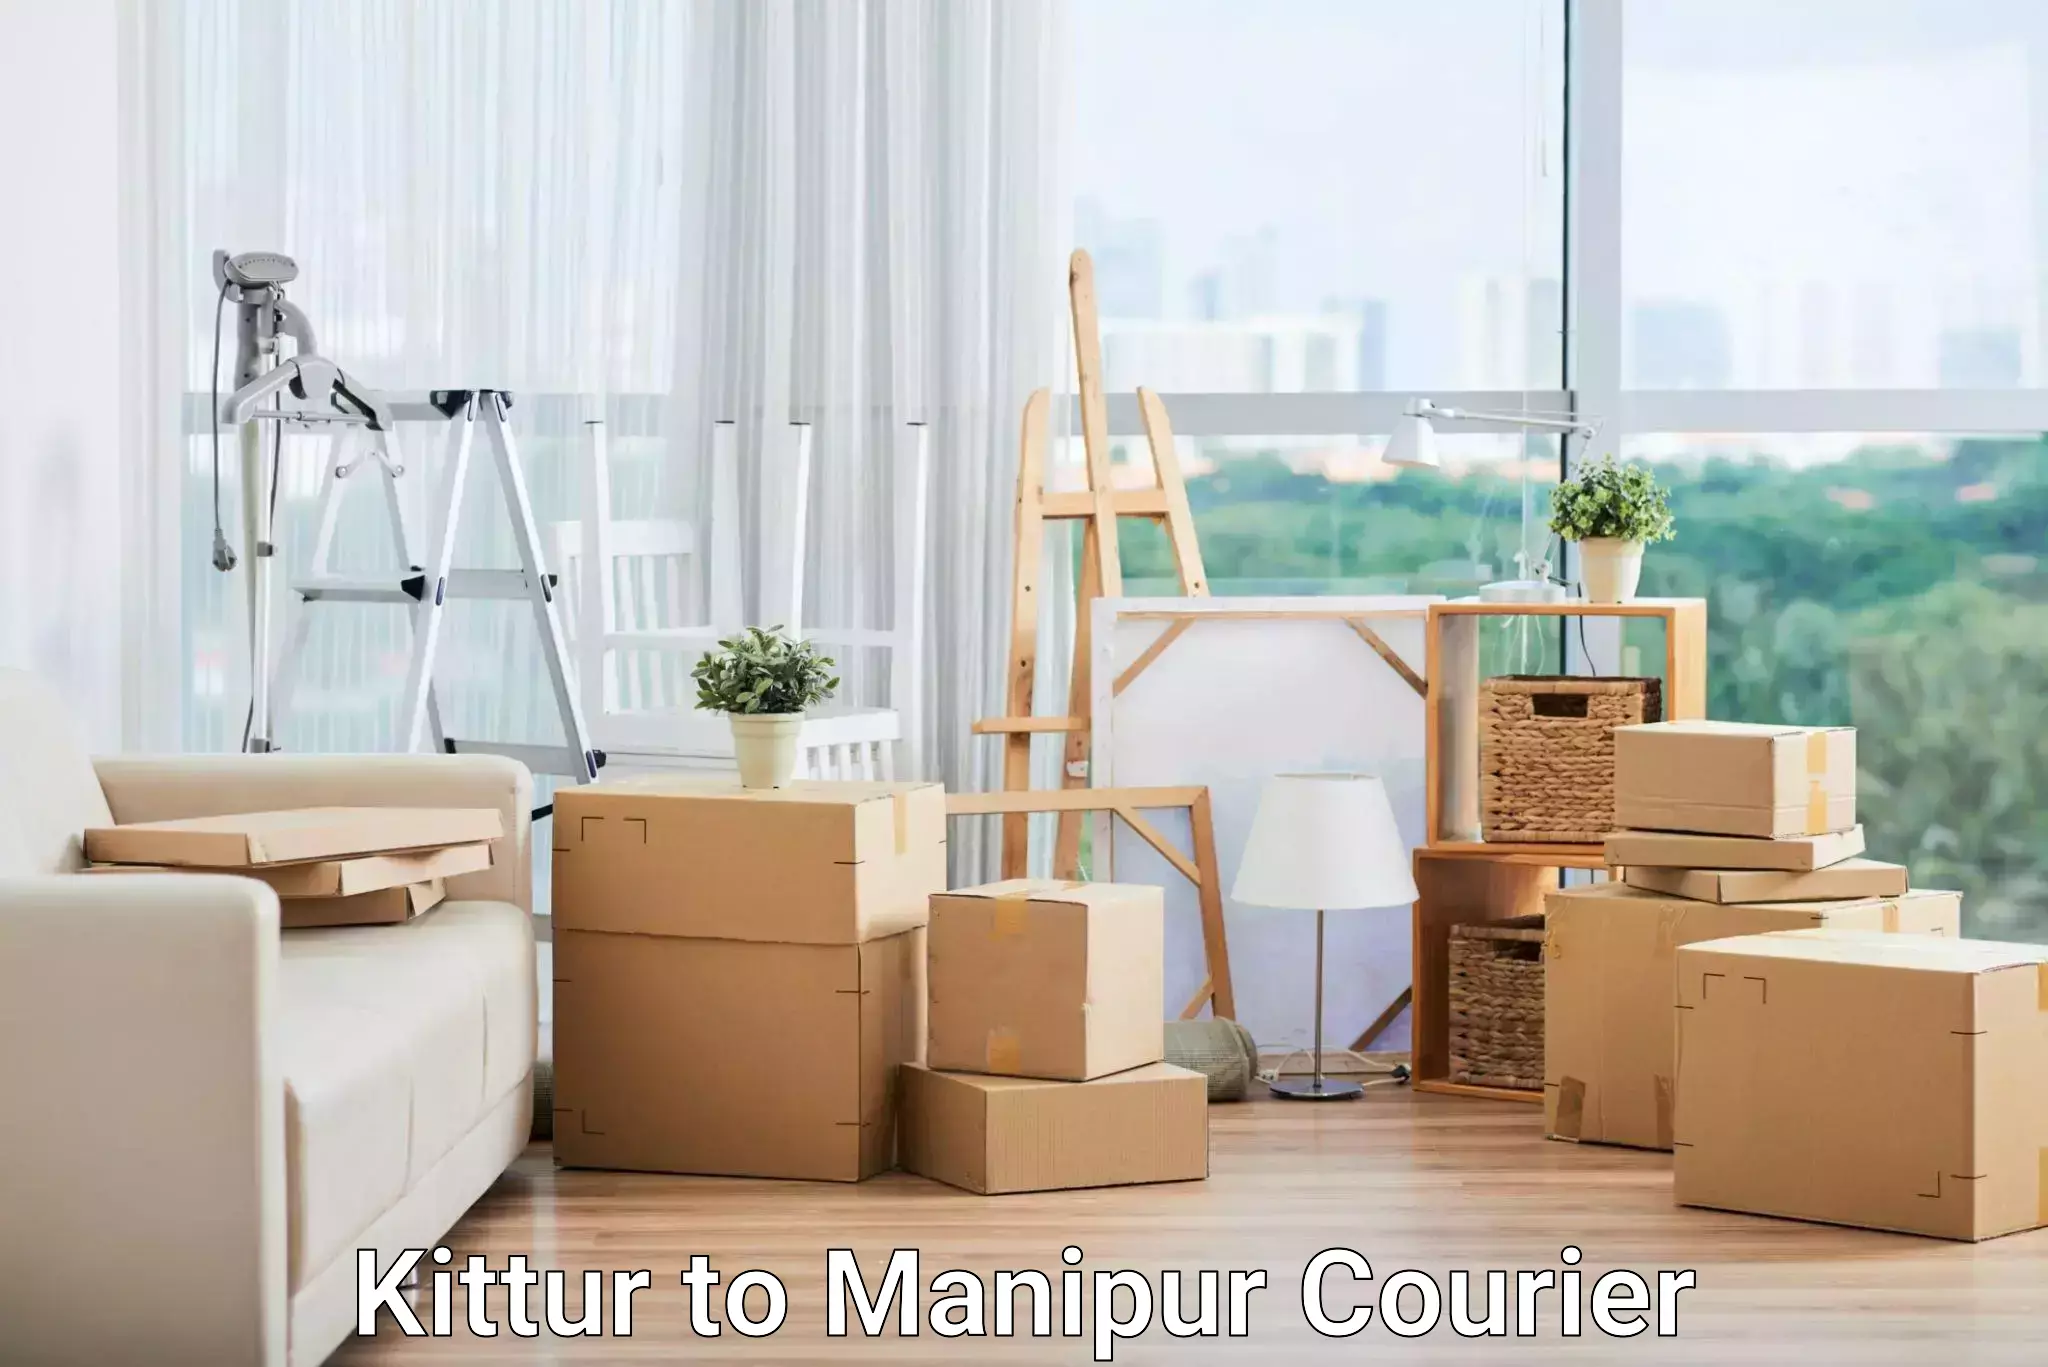 Global logistics network Kittur to Manipur